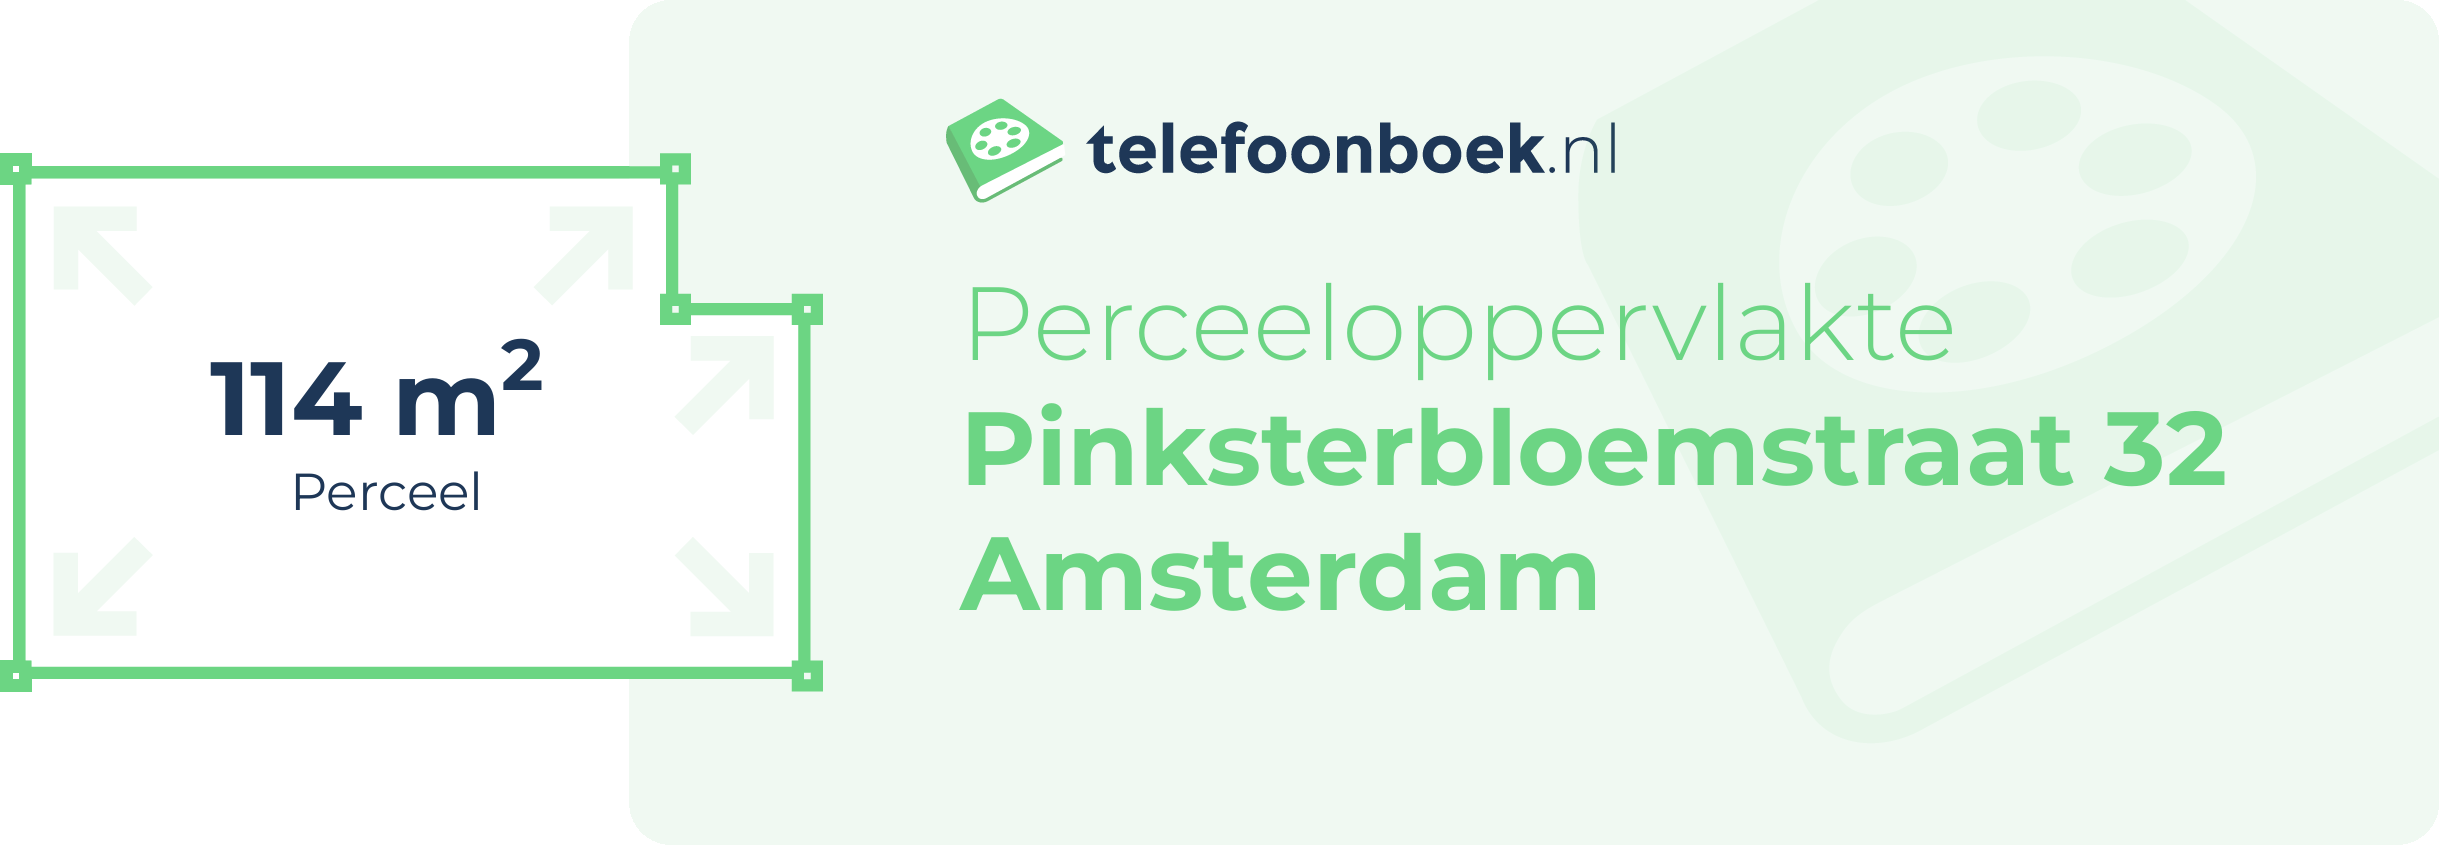 Perceeloppervlakte Pinksterbloemstraat 32 Amsterdam